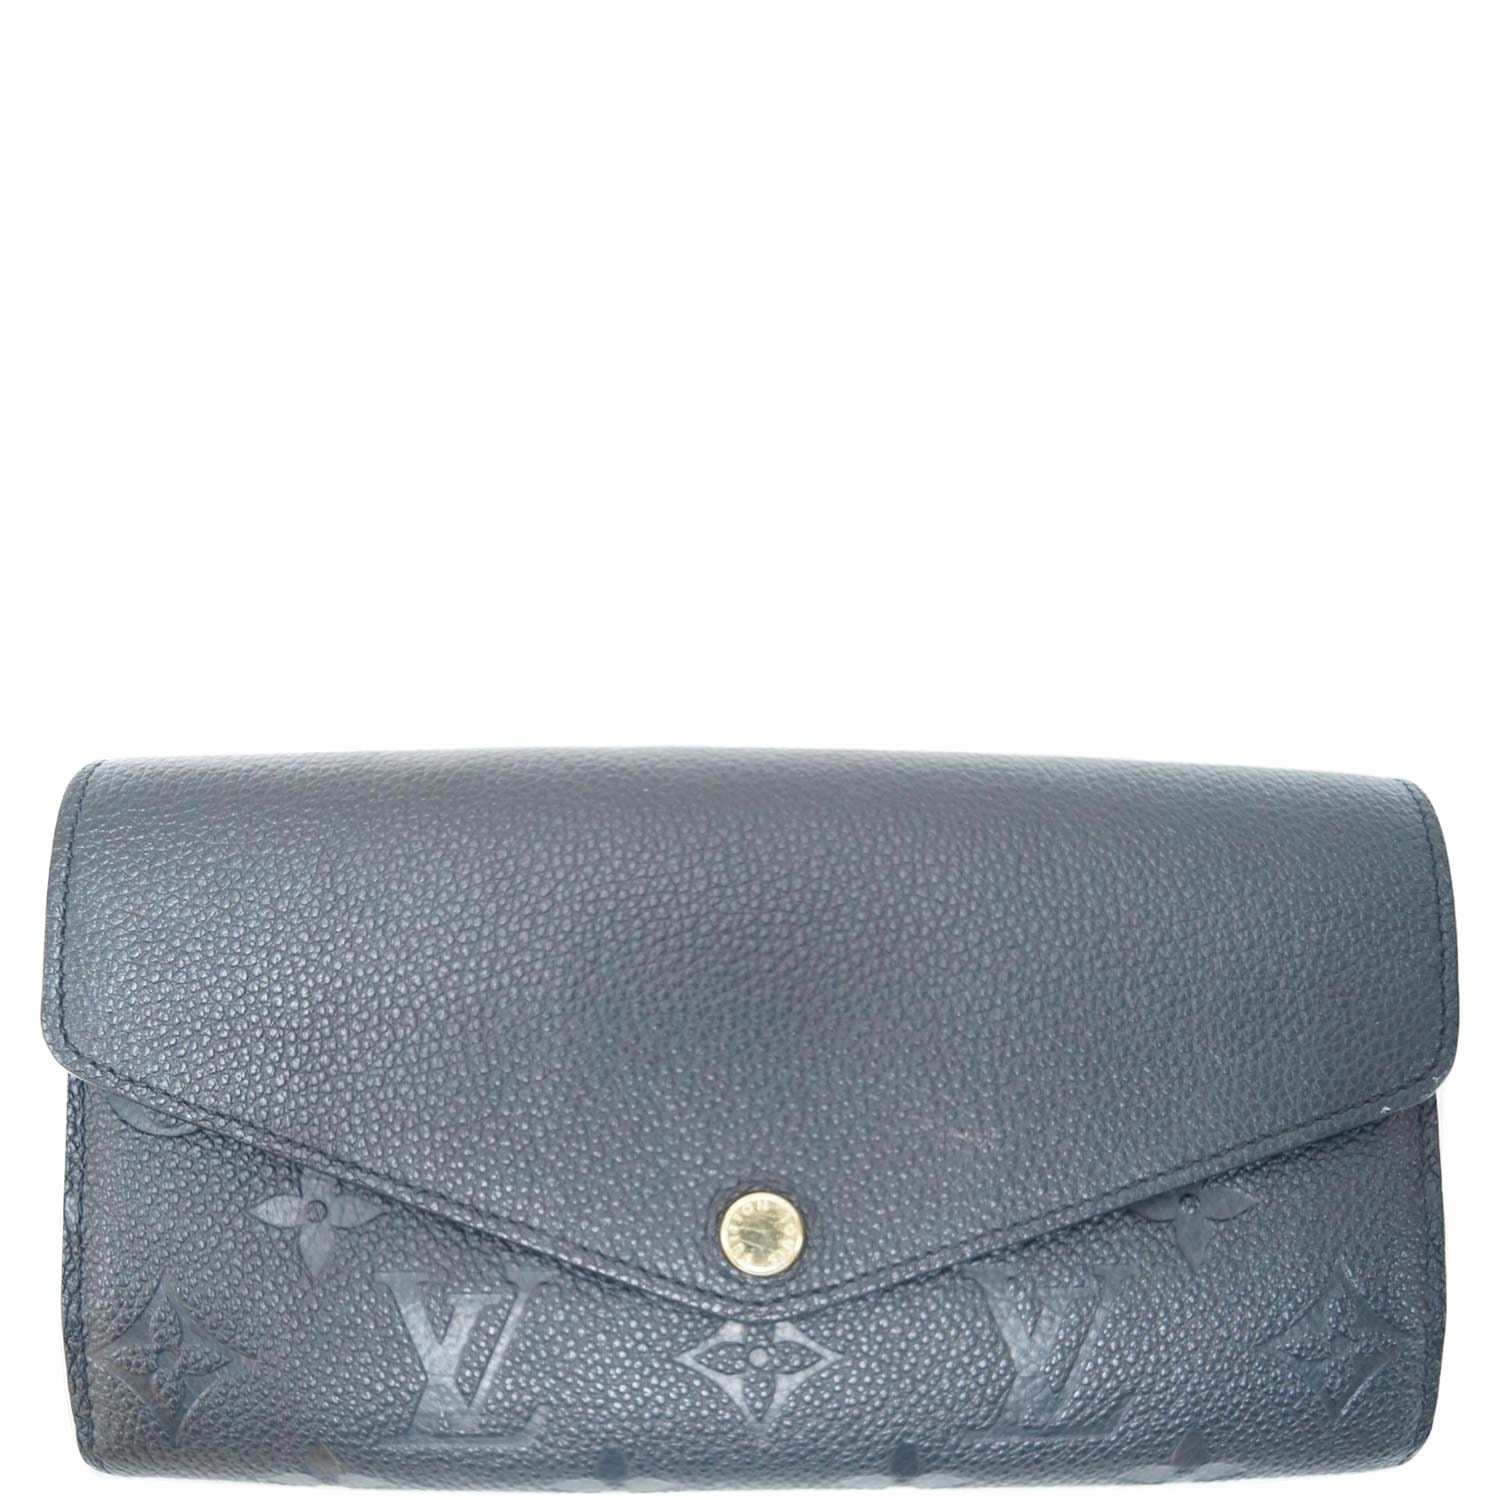 Louis Vuitton Portefeuille Sarah Navy blue Patent leather ref